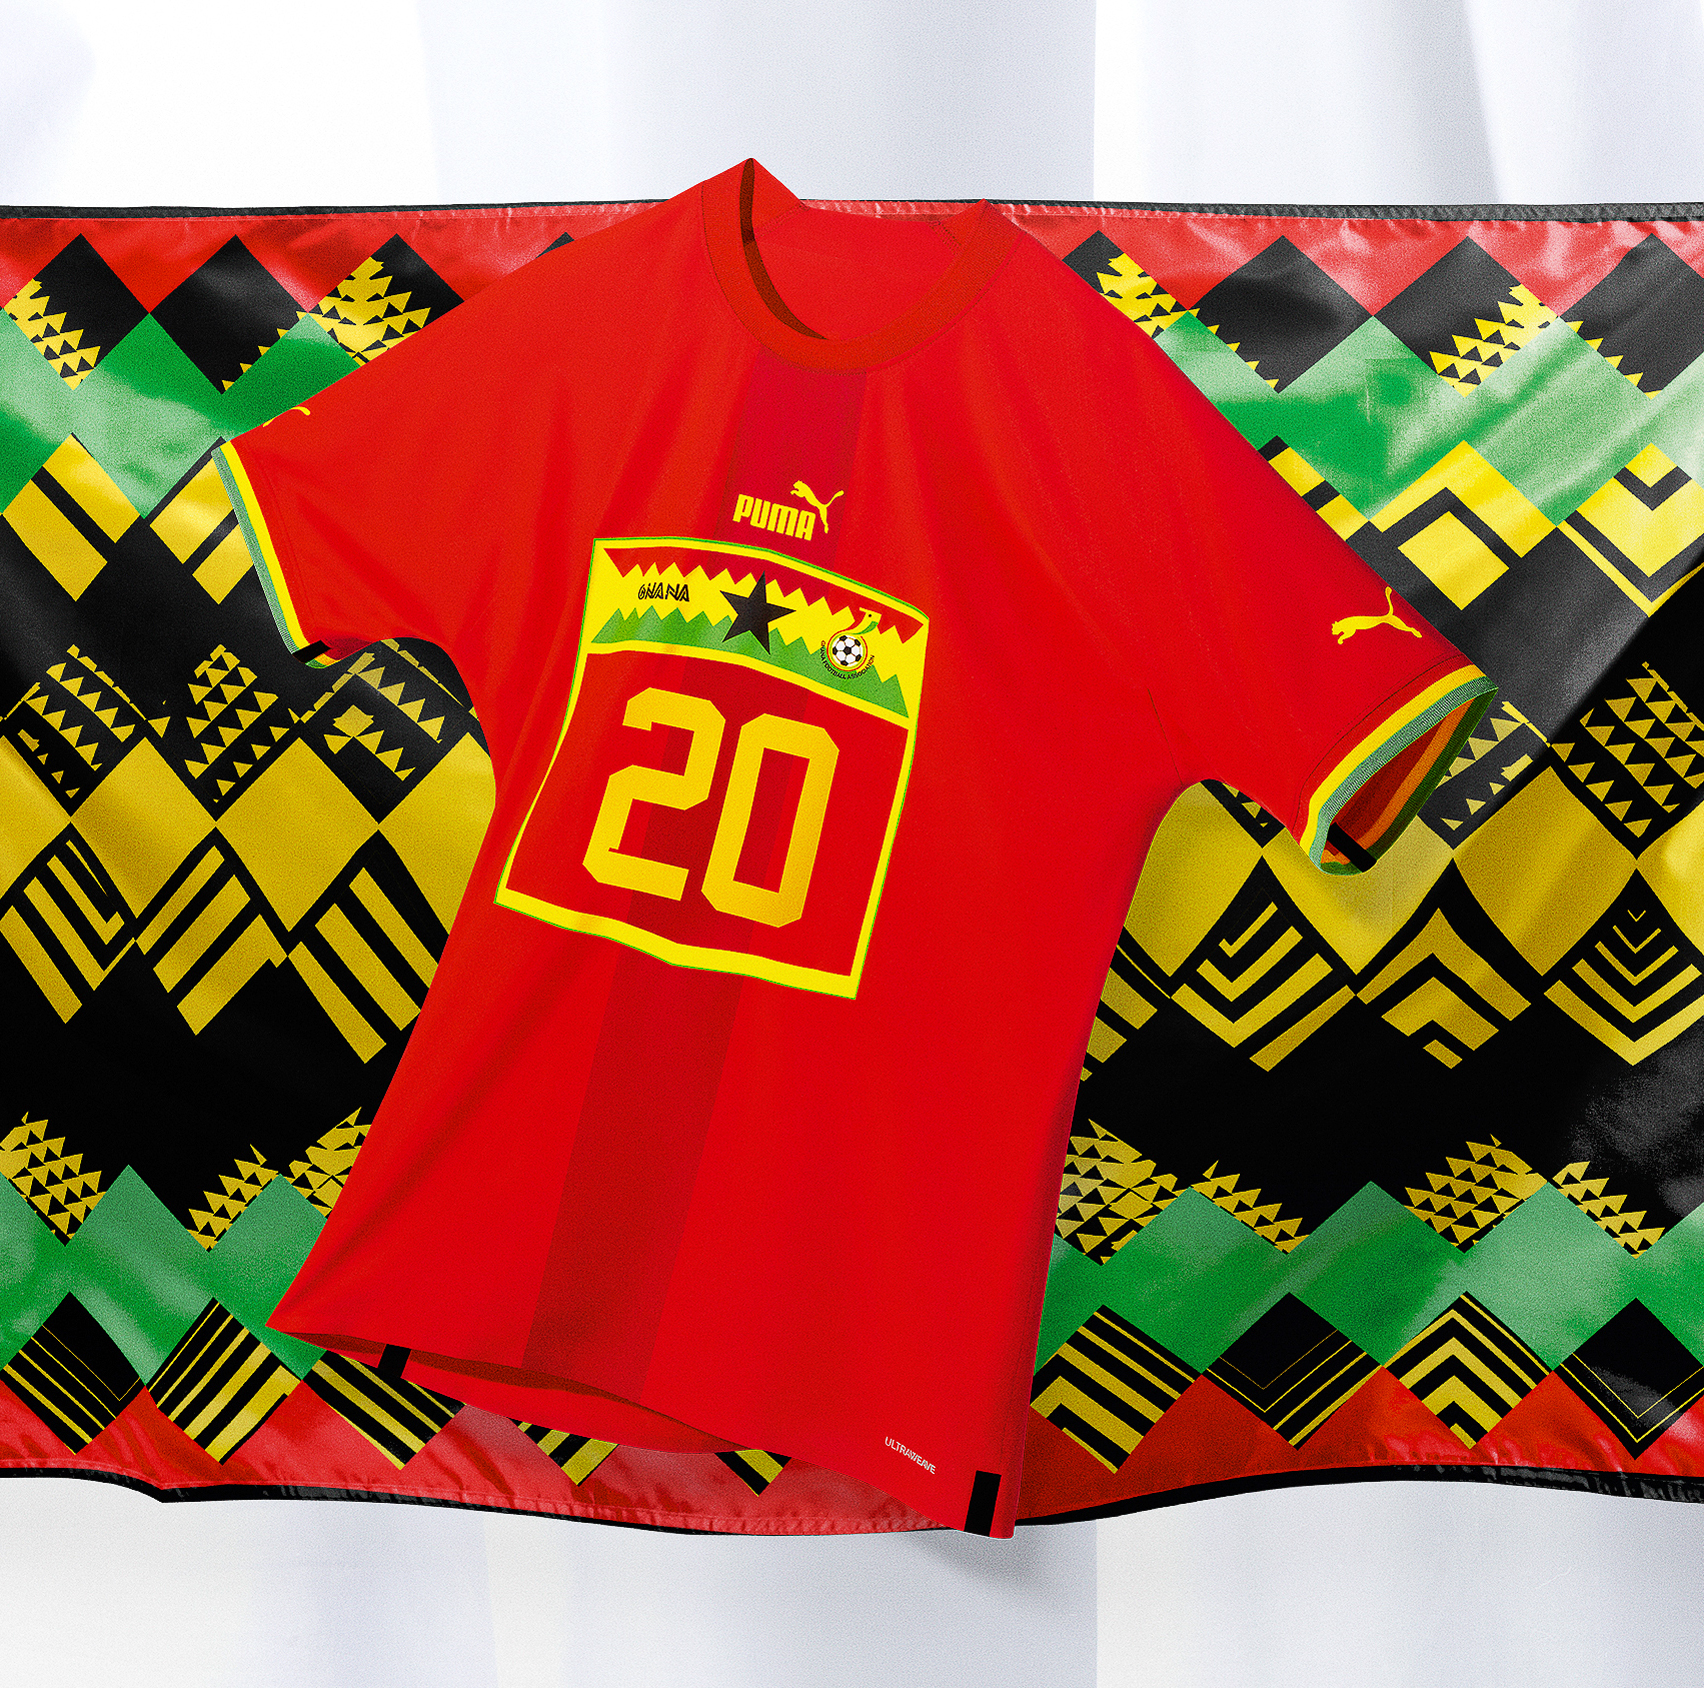 A Ghanaian football shirt by Puma